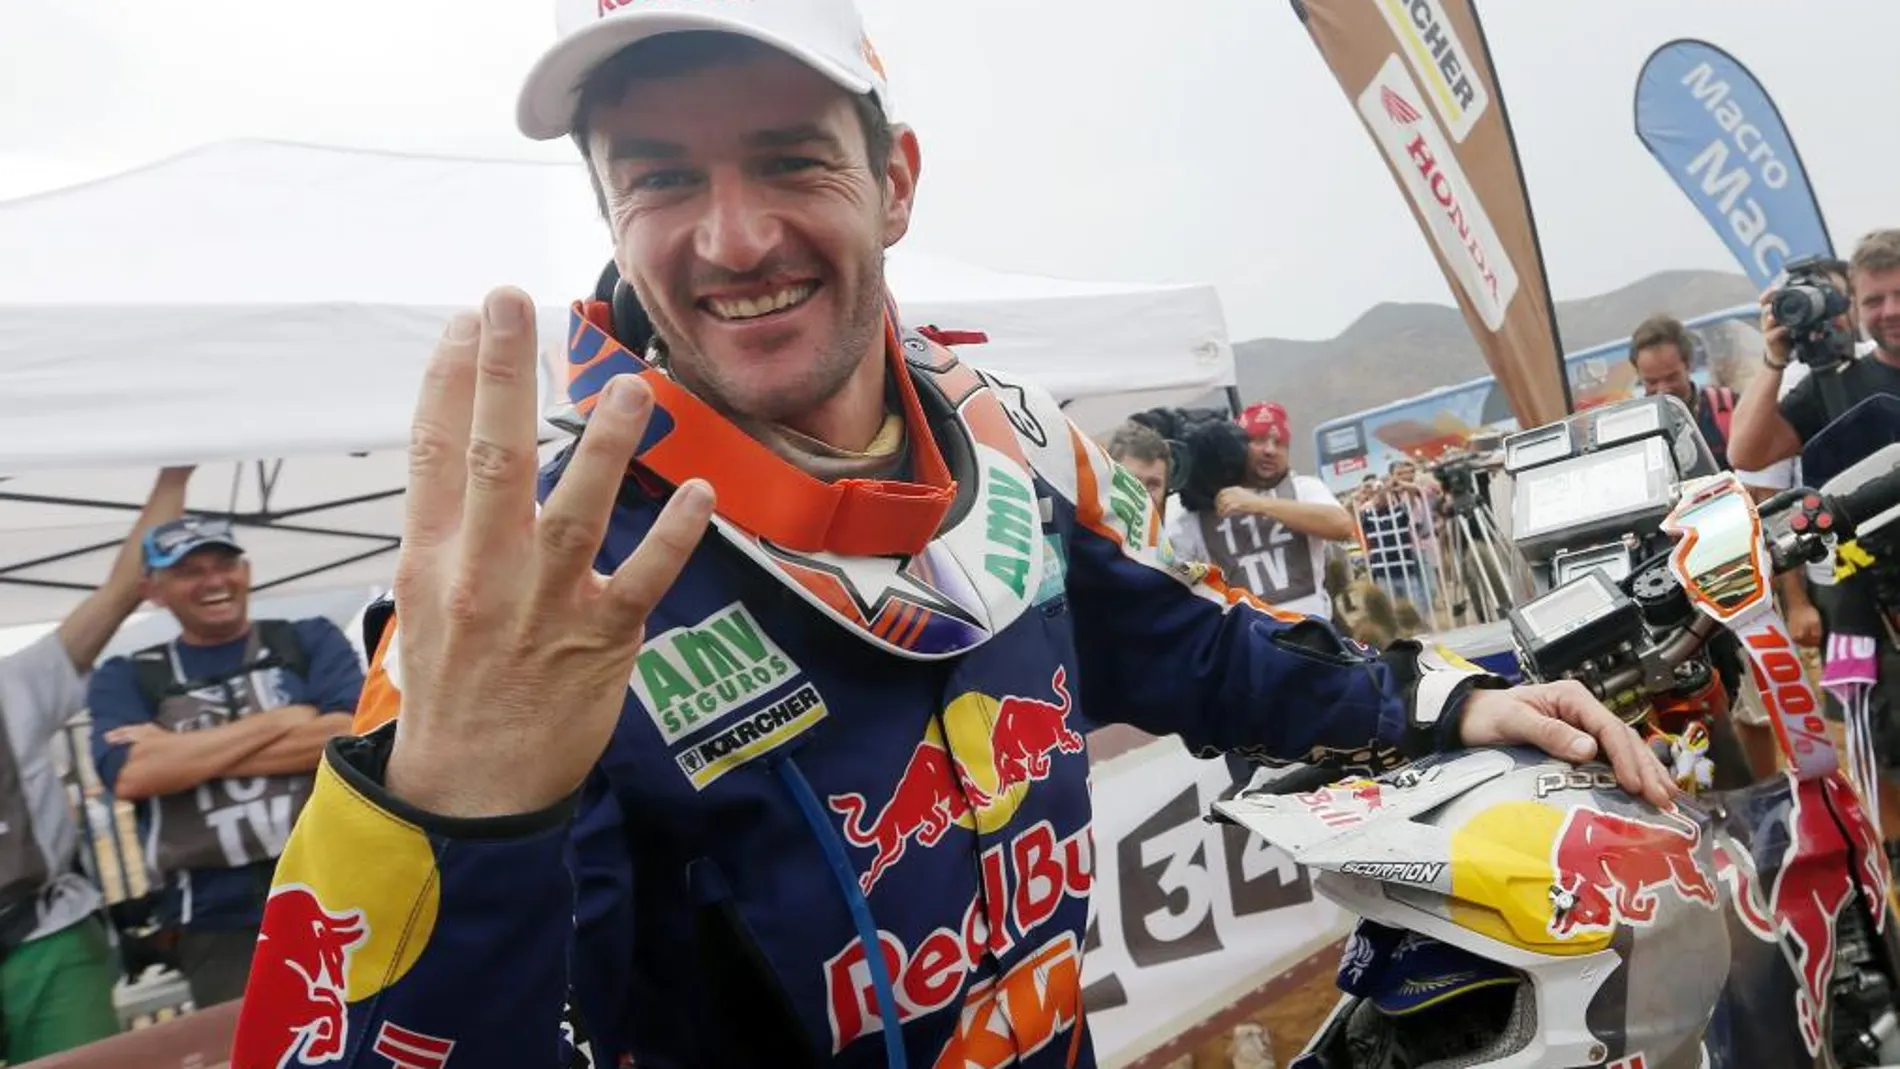 El español Marc Coma celebra su triunfo hoy, sábado 18 de enero de 2014, tras finalizar la última etapa del Rally Dakar 2014